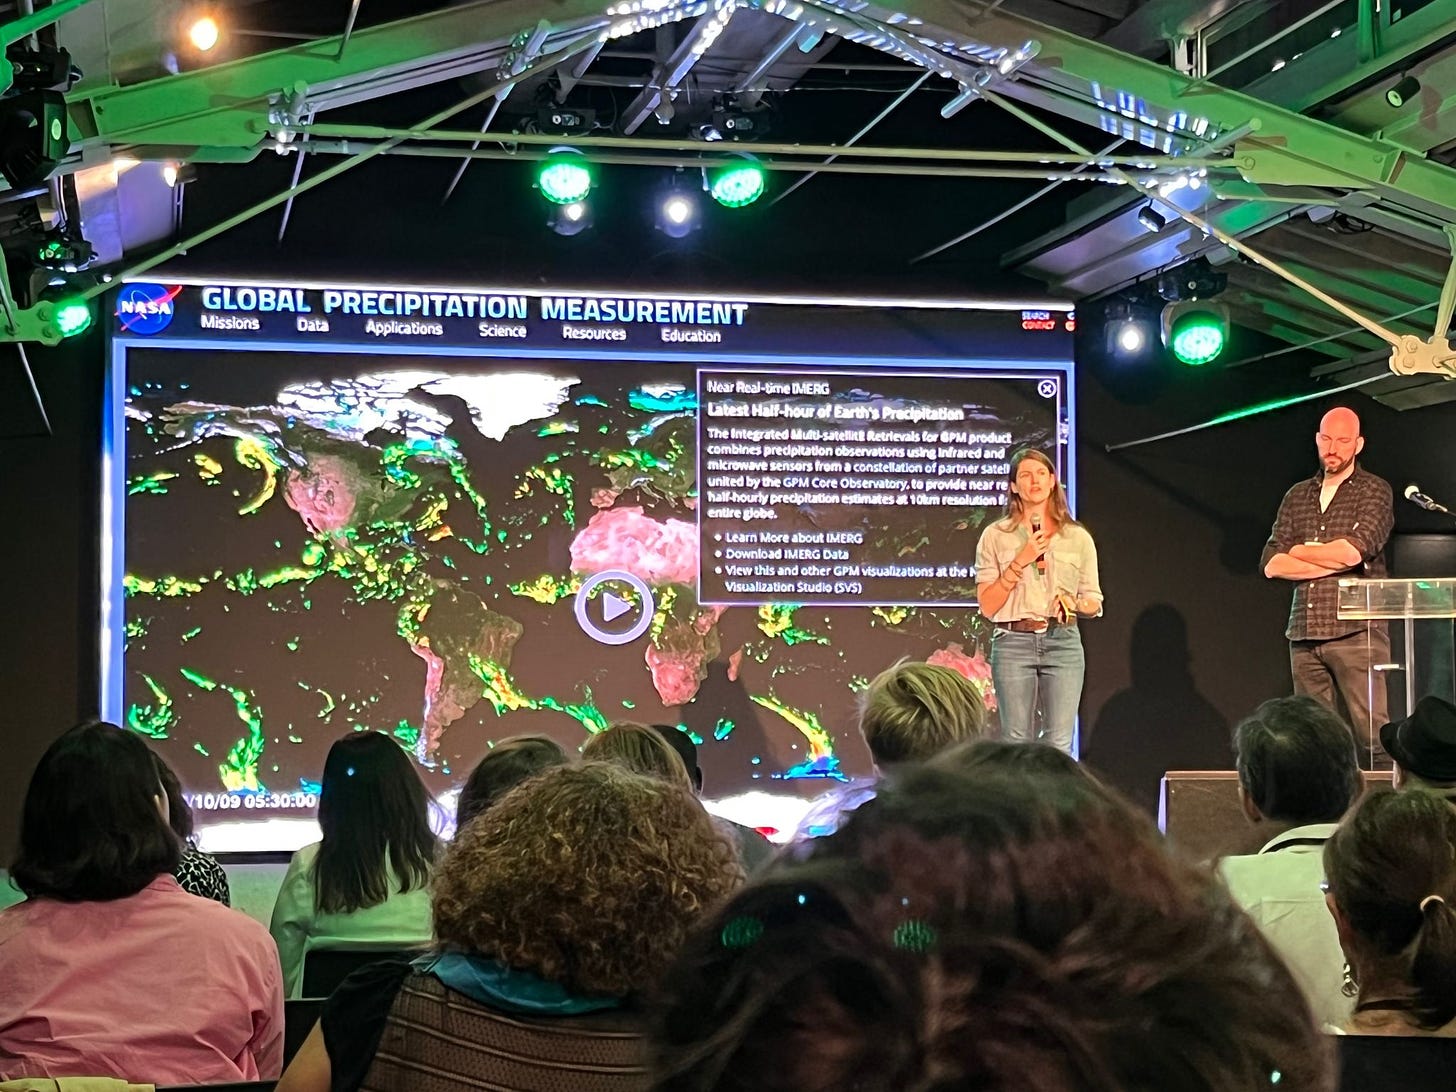 Bild von der Konferenz in Lissabon zu Klimajournalismus. Zu sehen ist eine Frau, die auf dem Podium die Karte zu Regendaten der NASA erklärt. Das Foto wurde aus dem Publikum aufgenommen.